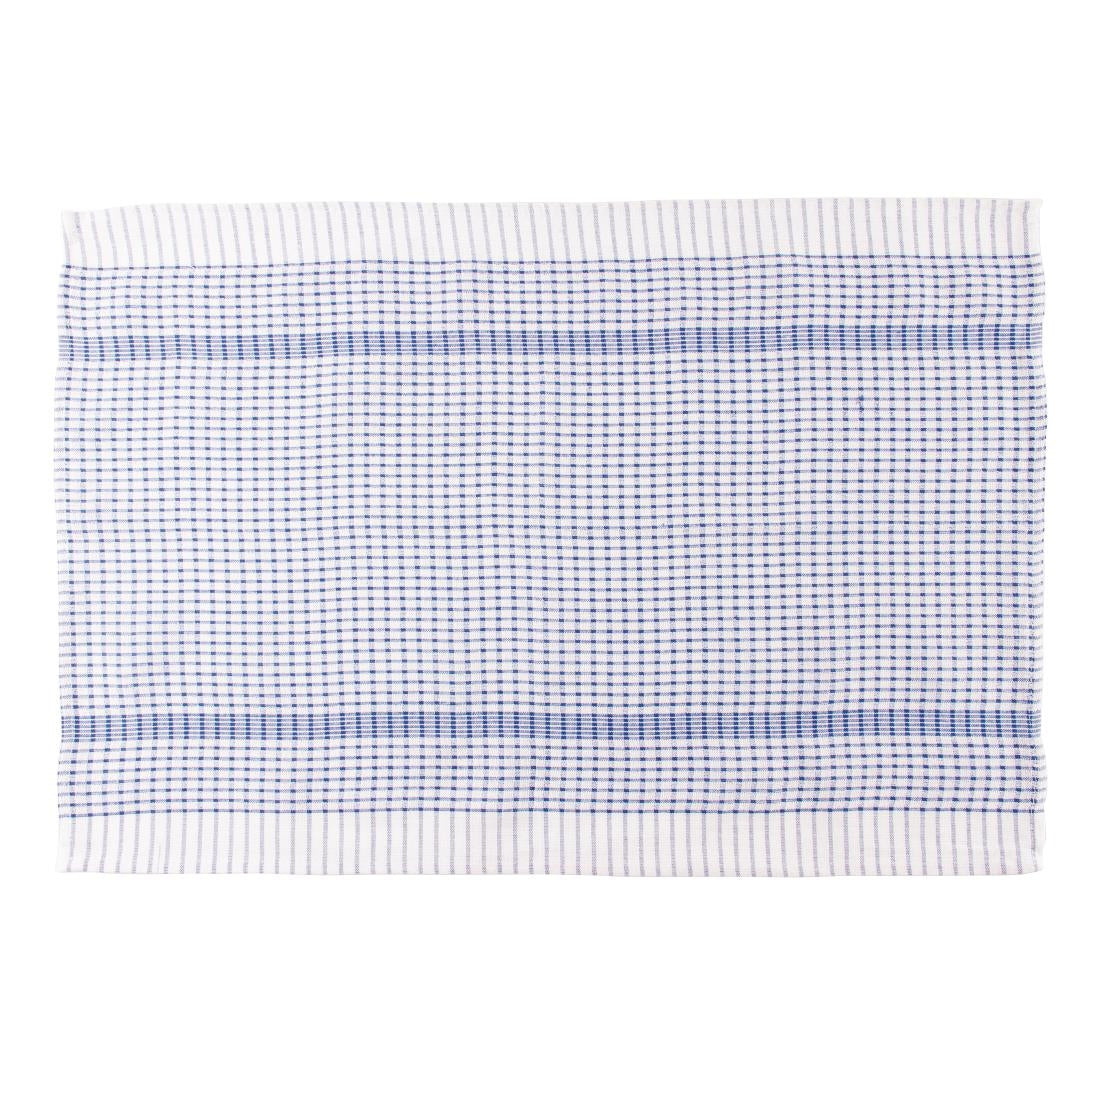 CC596 Vogue Wonderdry Blue Tea Towels (Pack of 10)